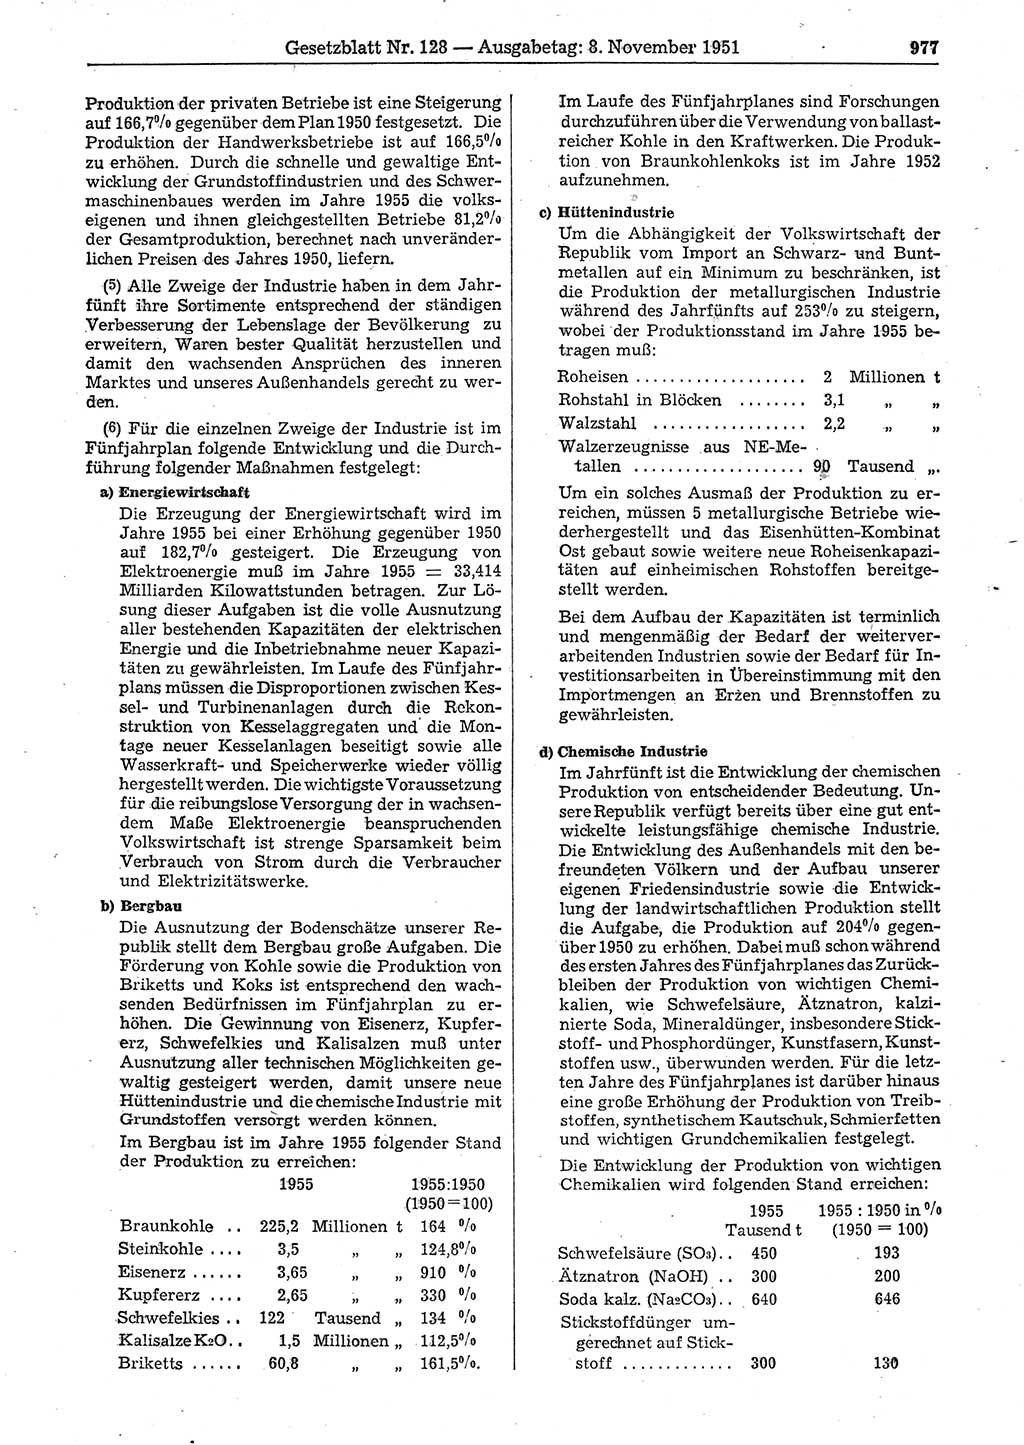 Gesetzblatt (GBl.) der Deutschen Demokratischen Republik (DDR) 1951, Seite 977 (GBl. DDR 1951, S. 977)